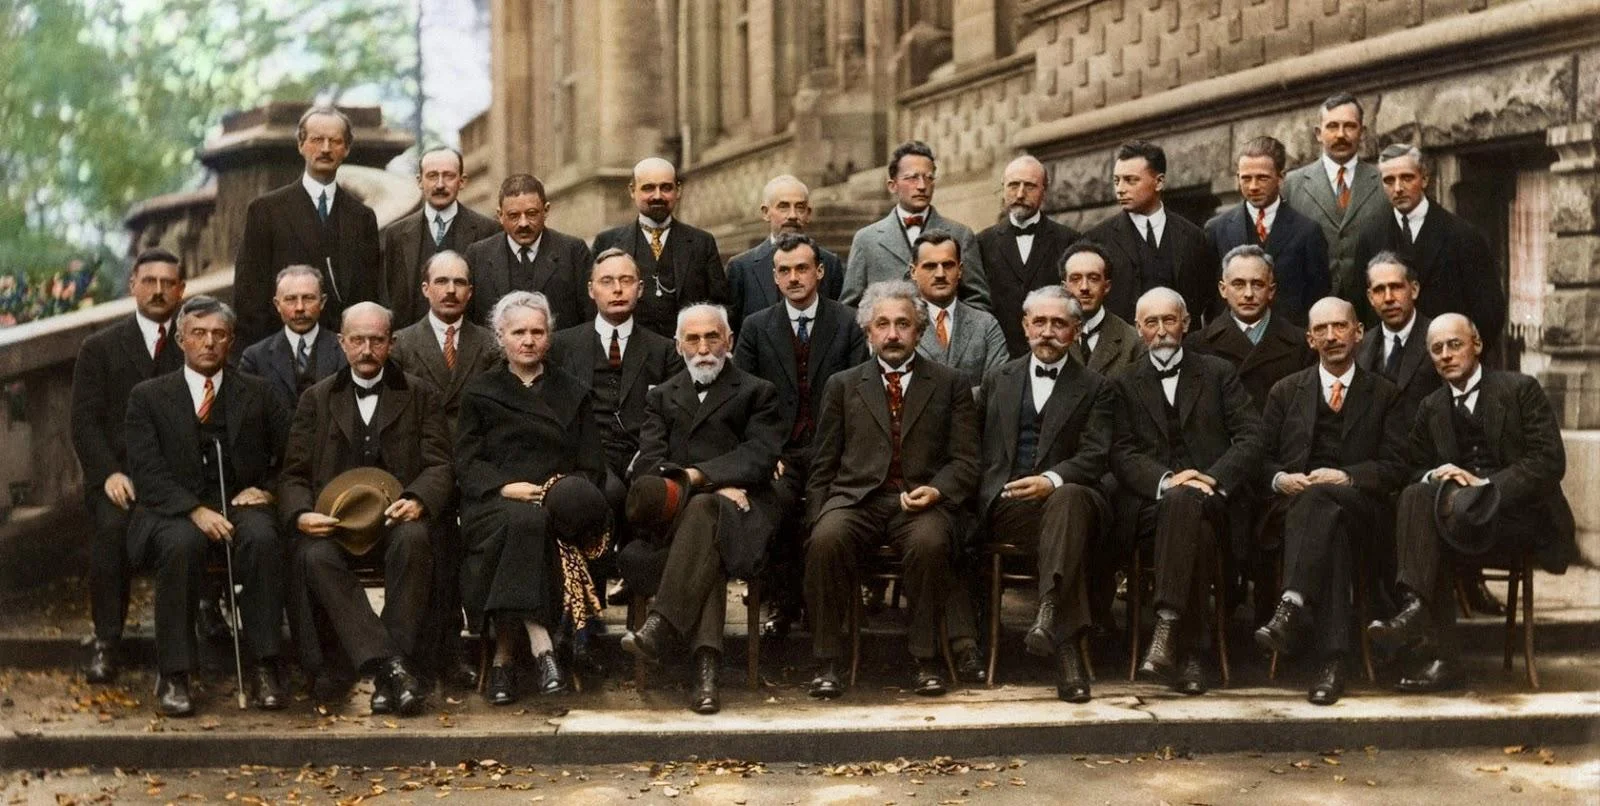 2.一九二七年十月於比利時舉行的第五屆索爾維會議 (Solvay Conference，每三年舉辦一次，專門討論物理和化學上難解的謎題)，拍了一張被譽為二十世紀「智商最高的合照」。中座者為愛因斯坦，第二行最右為玻爾，二十九人之中只有一名女性——居禮夫人。從左至右，後排：A. Piccard, E. Henriot, P. Ehrenfest, E. Herzen, Th. De Donder, E. Schrödinger, J.E. Verschaffelt, W. Pauli, W. Heisenberg, R.H. Fowler, L. Brillouin; 中排：P. Debye, M. Knudsen, W.L. Bragg, H.A. Kramers, P.A.M. Dirac, A.H. Compton, L. de Broglie, M. Born, N. Bohr; 前排：I. Langmuir, M. Planck, M. Curie, H.A. Lorentz, A. Einstein, P. Langevin, Ch. E. Guye, C.T.R. Wilson, O.W. Richardson。